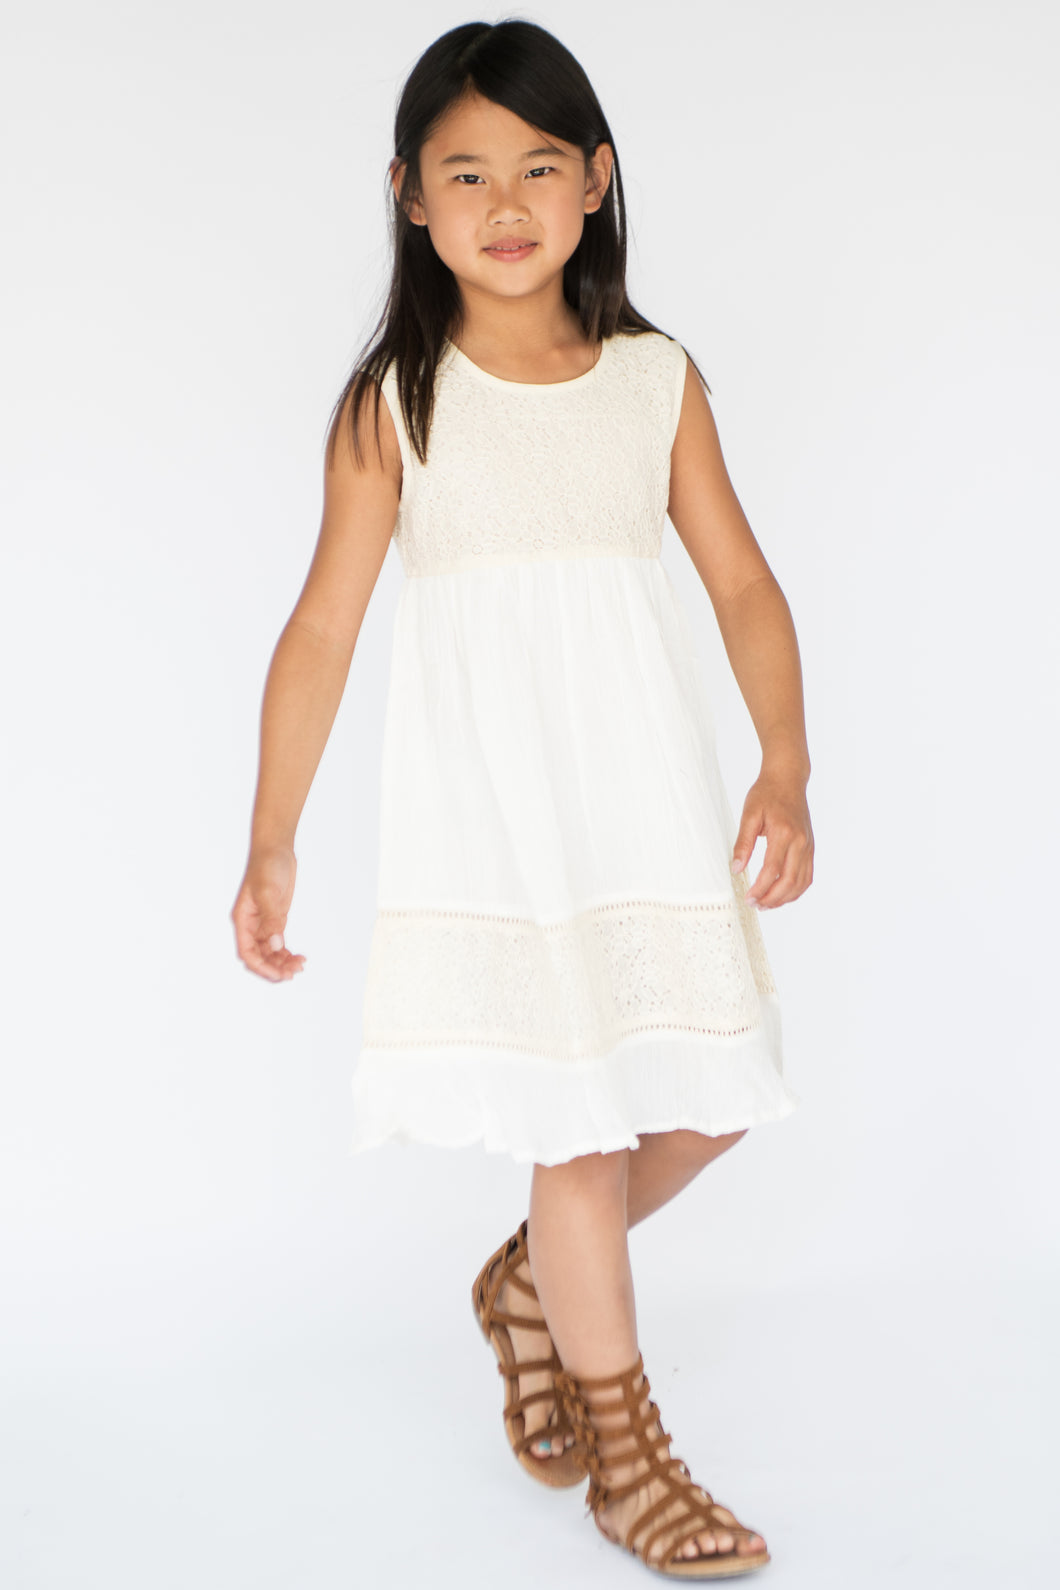 White Net & Lace Detail Dress - Kids Wholesale Boutique Clothing, Dress - Girls Dresses, Yo Baby Wholesale - Yo Baby